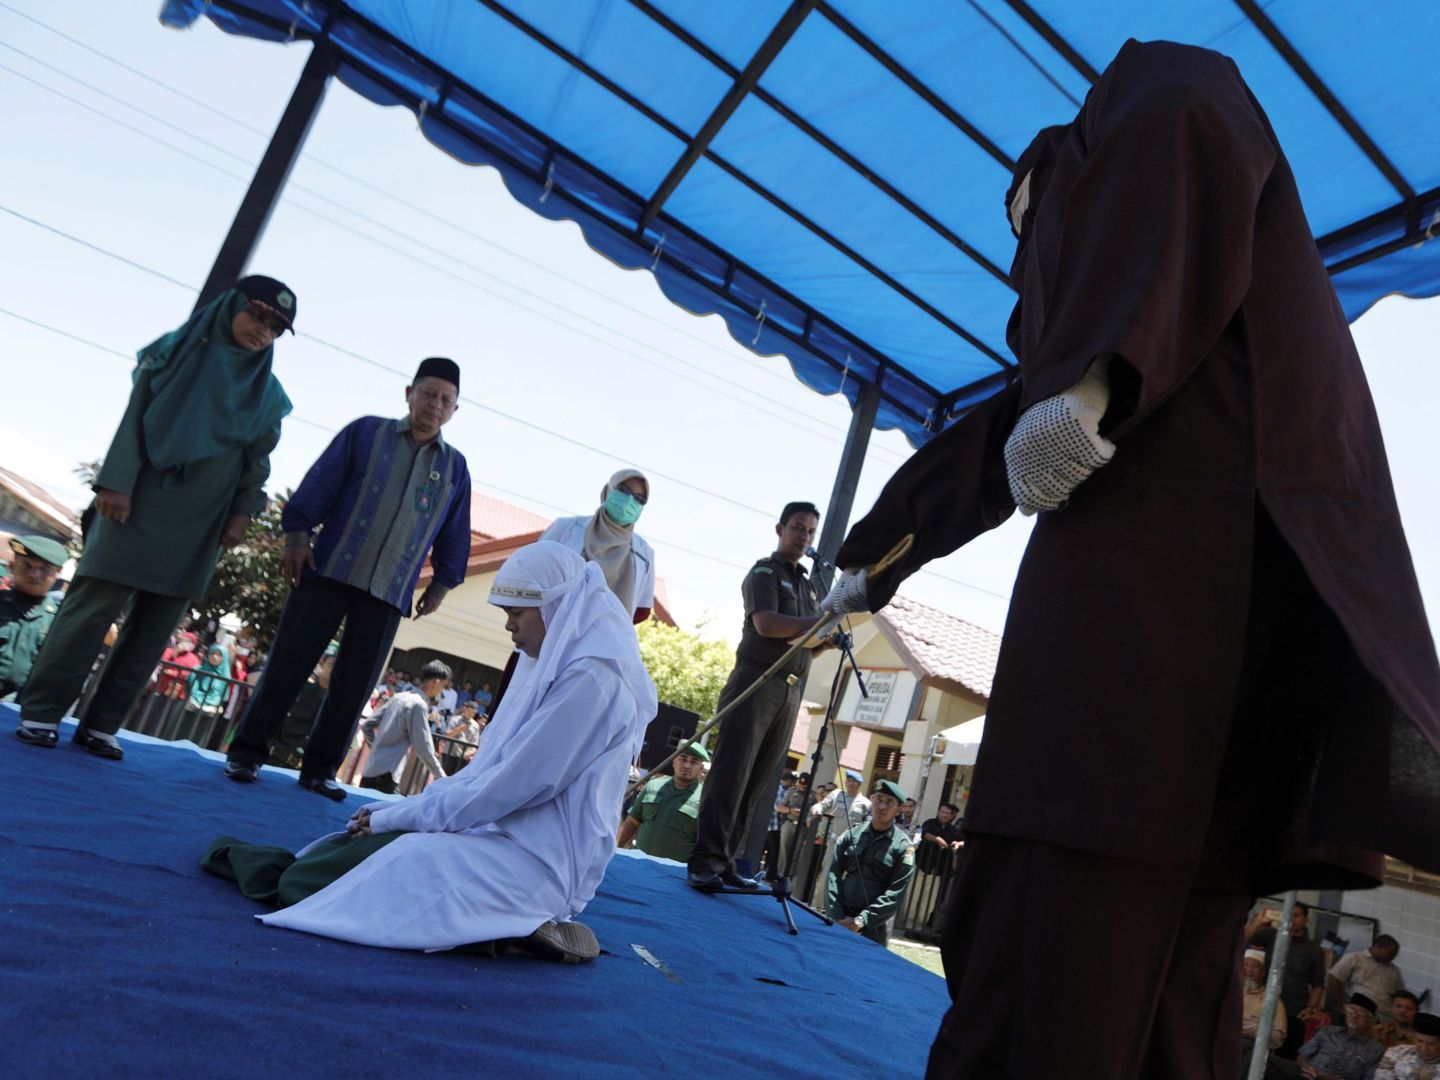 En algunos países como Indonesia, el adulterio está penado con castigos corporales (EFE/Hotli Simanjuntak)